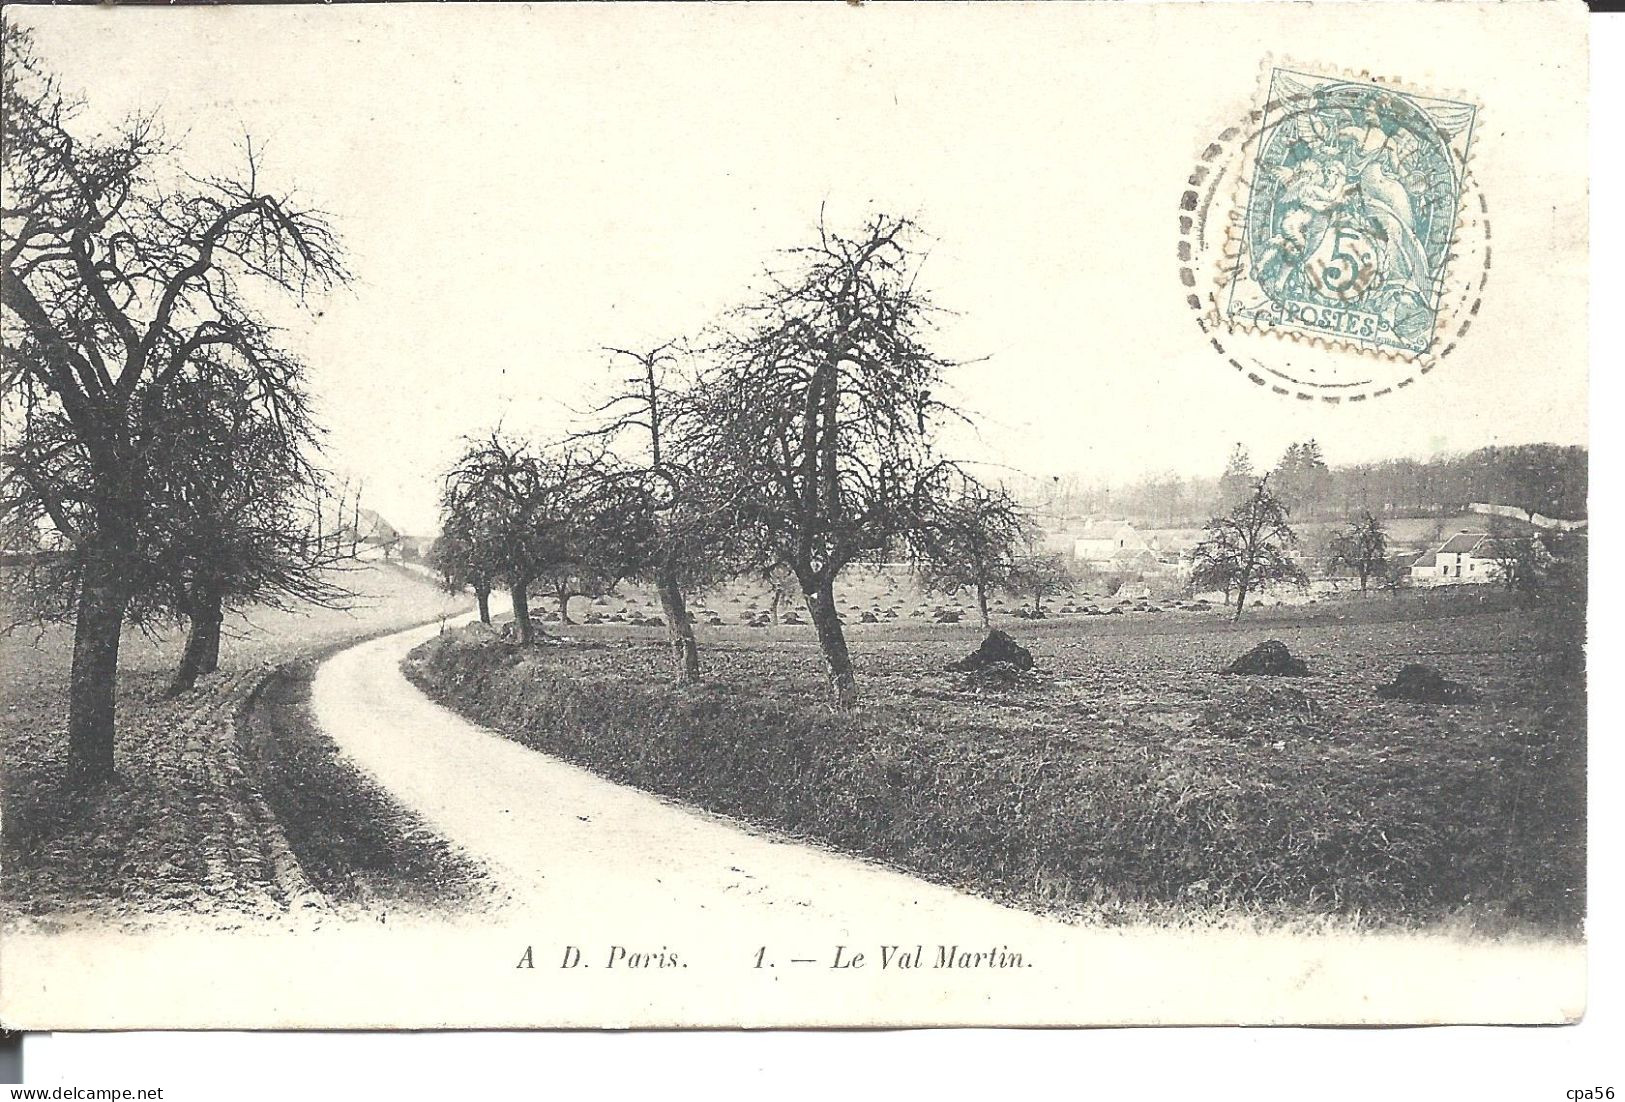 SAINT-NOM La BRETECHE - Plaine Et Hameau Le VAL MARTIN 1905 - St. Nom La Breteche